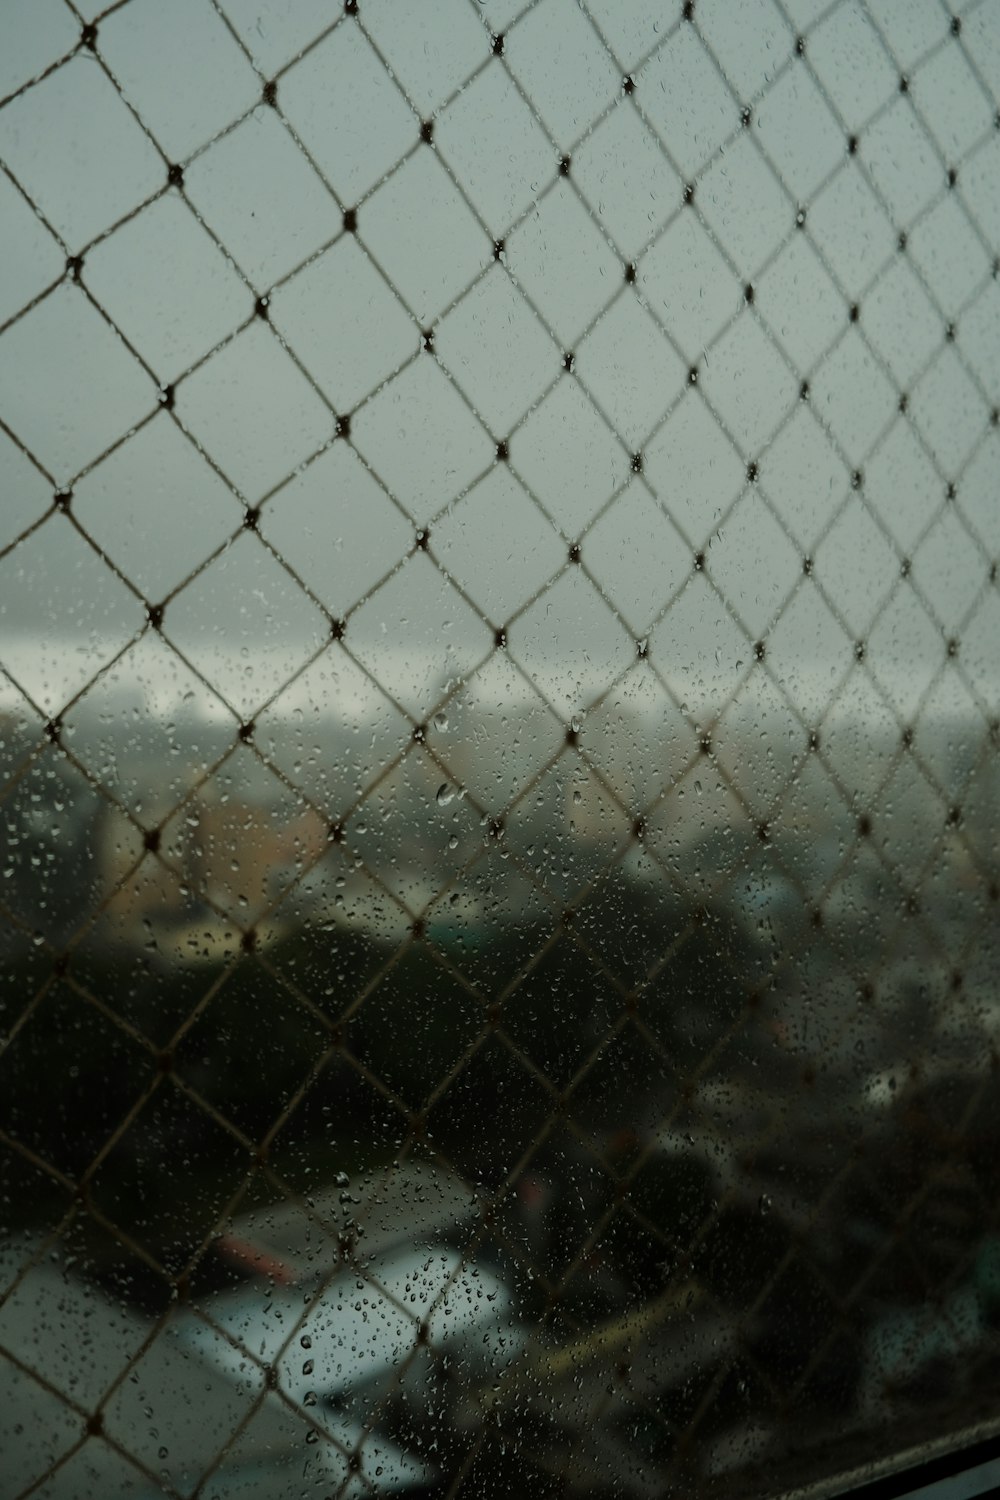 Una vista de una ciudad a través de una valla de alambre